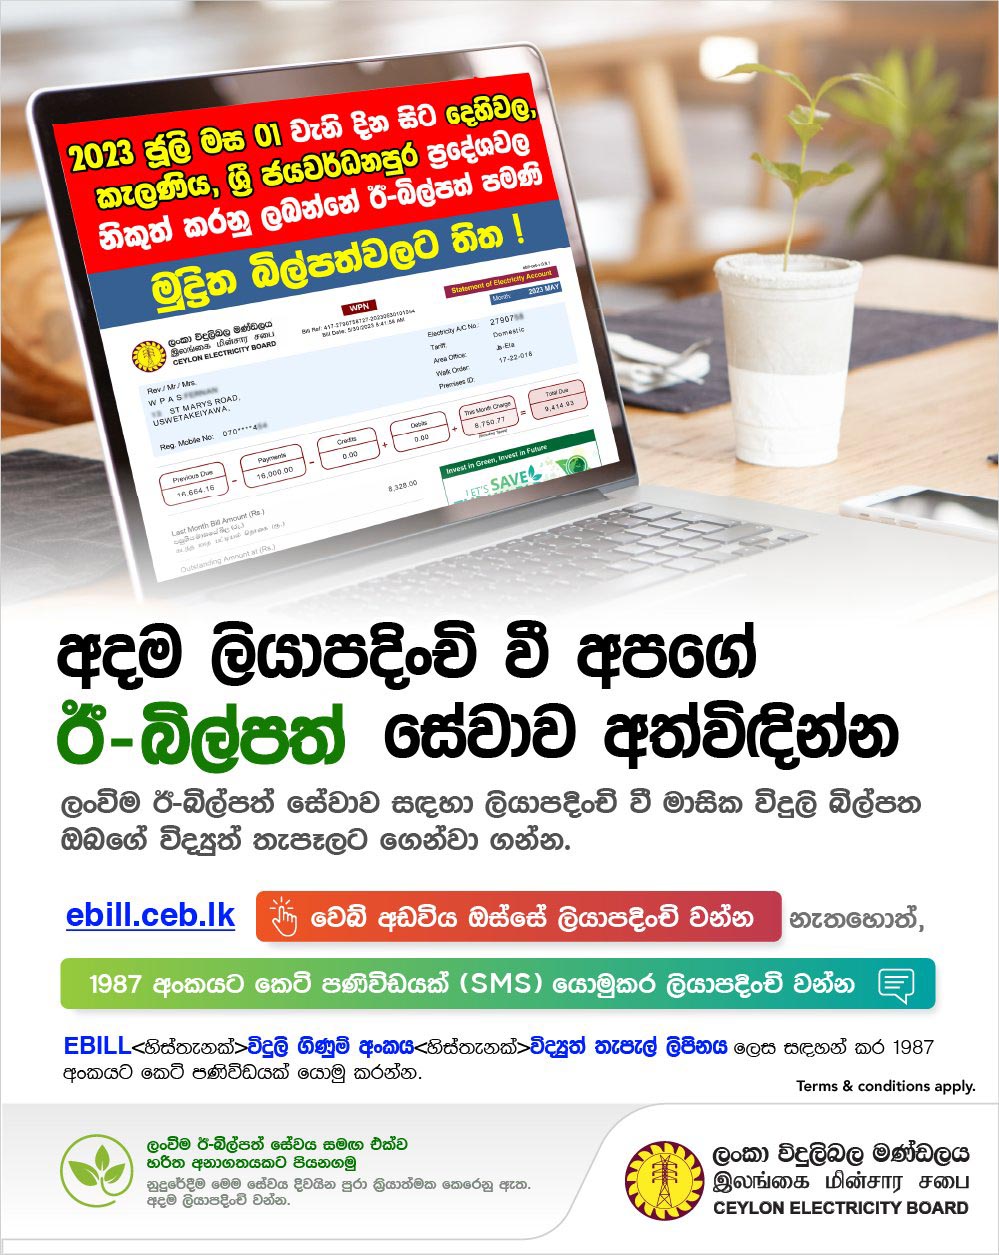 Ceylon Electricity Board (CEB) - Registration for CEB e-Billing Service